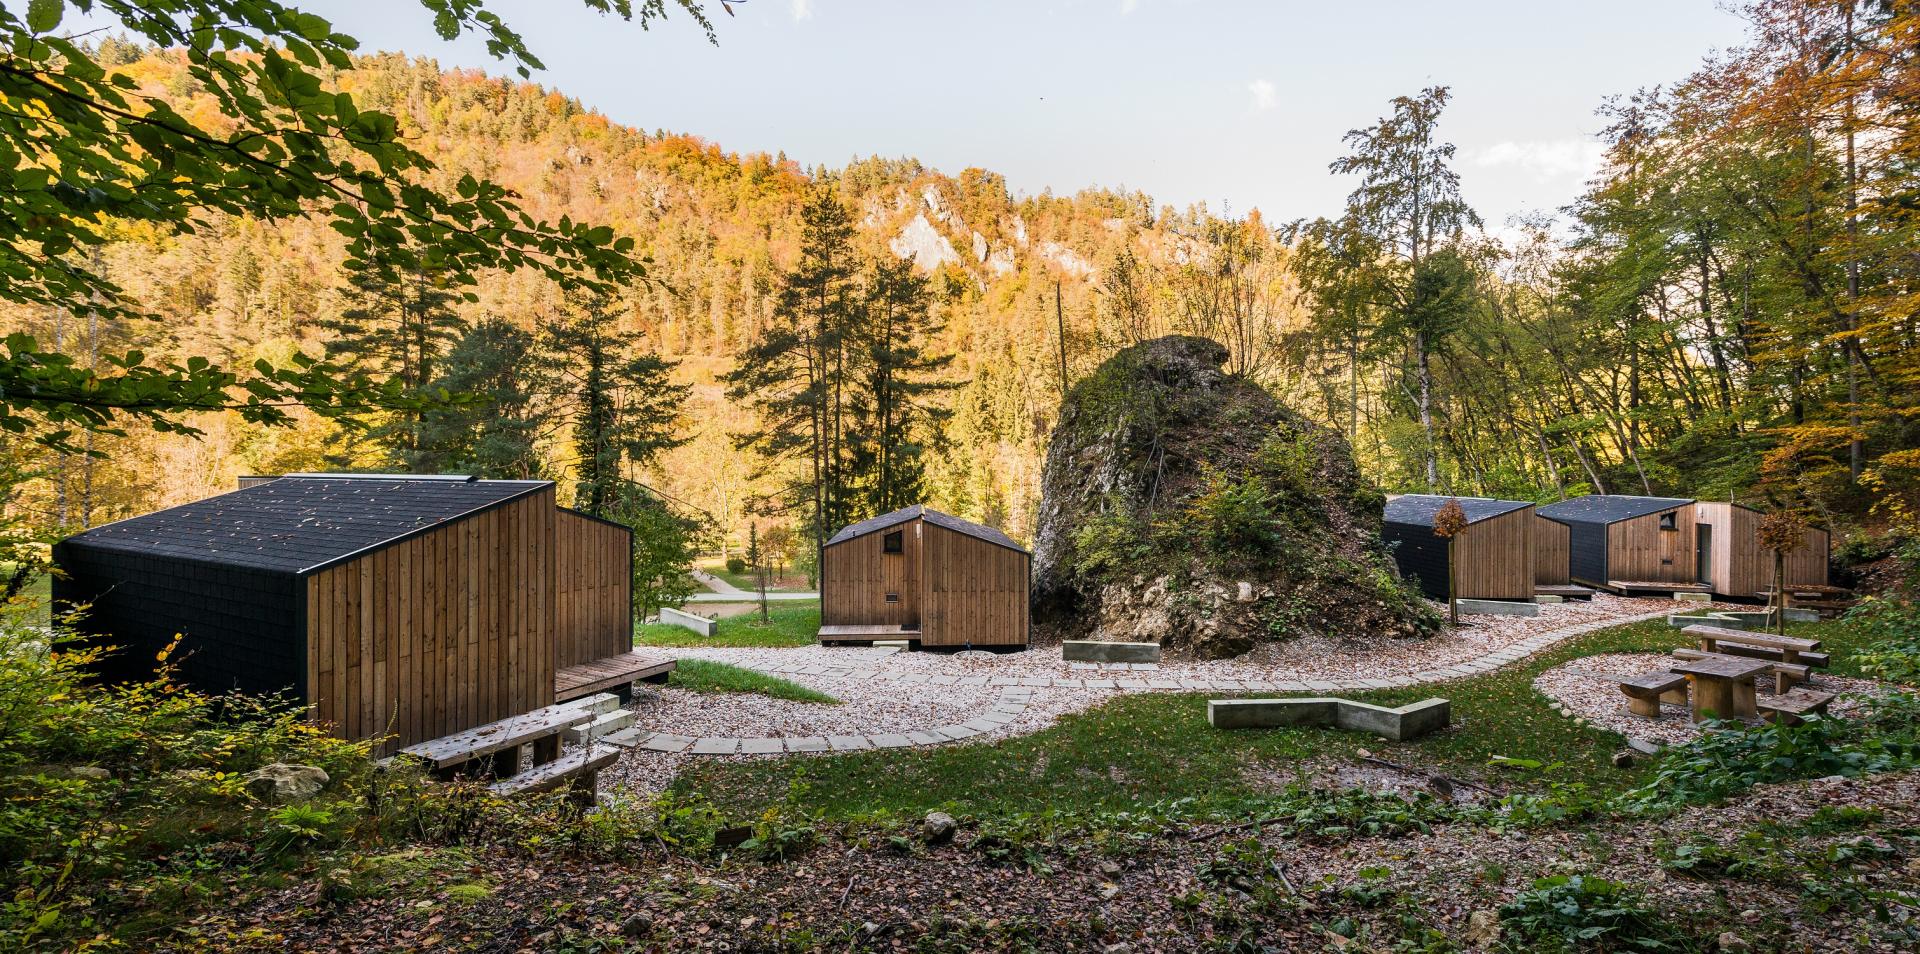 cabane-mini-chalet-montagne-ekokoncept-for-4-0 maison-prefabriquee-contemporaine-ecologique-en-bois